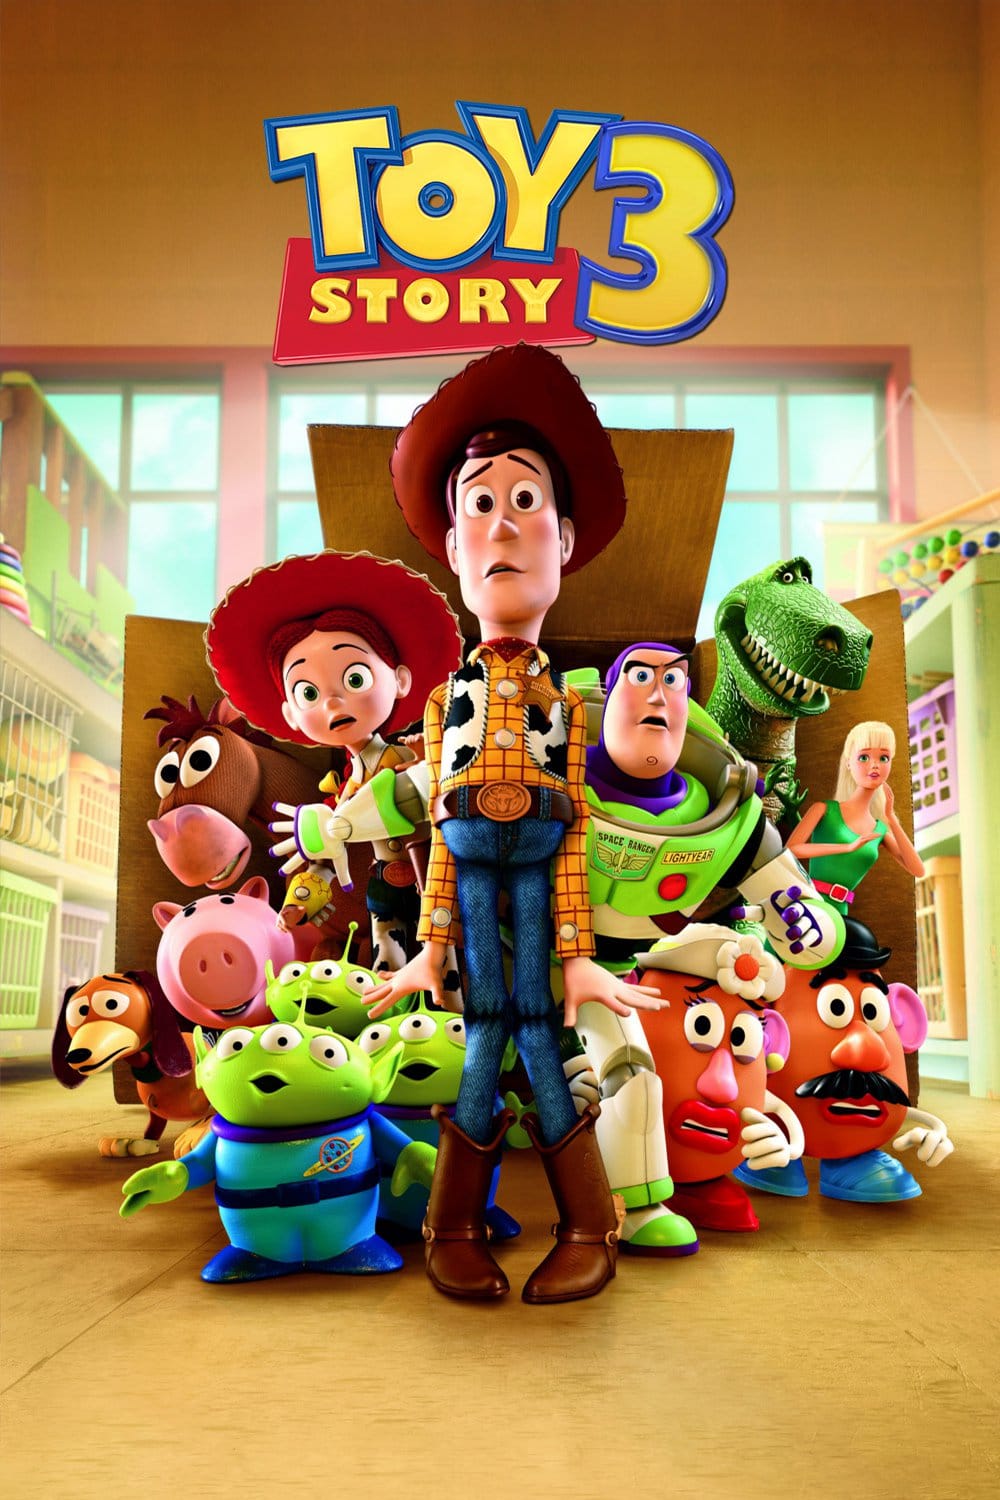 Plakat von "Toy Story 3"